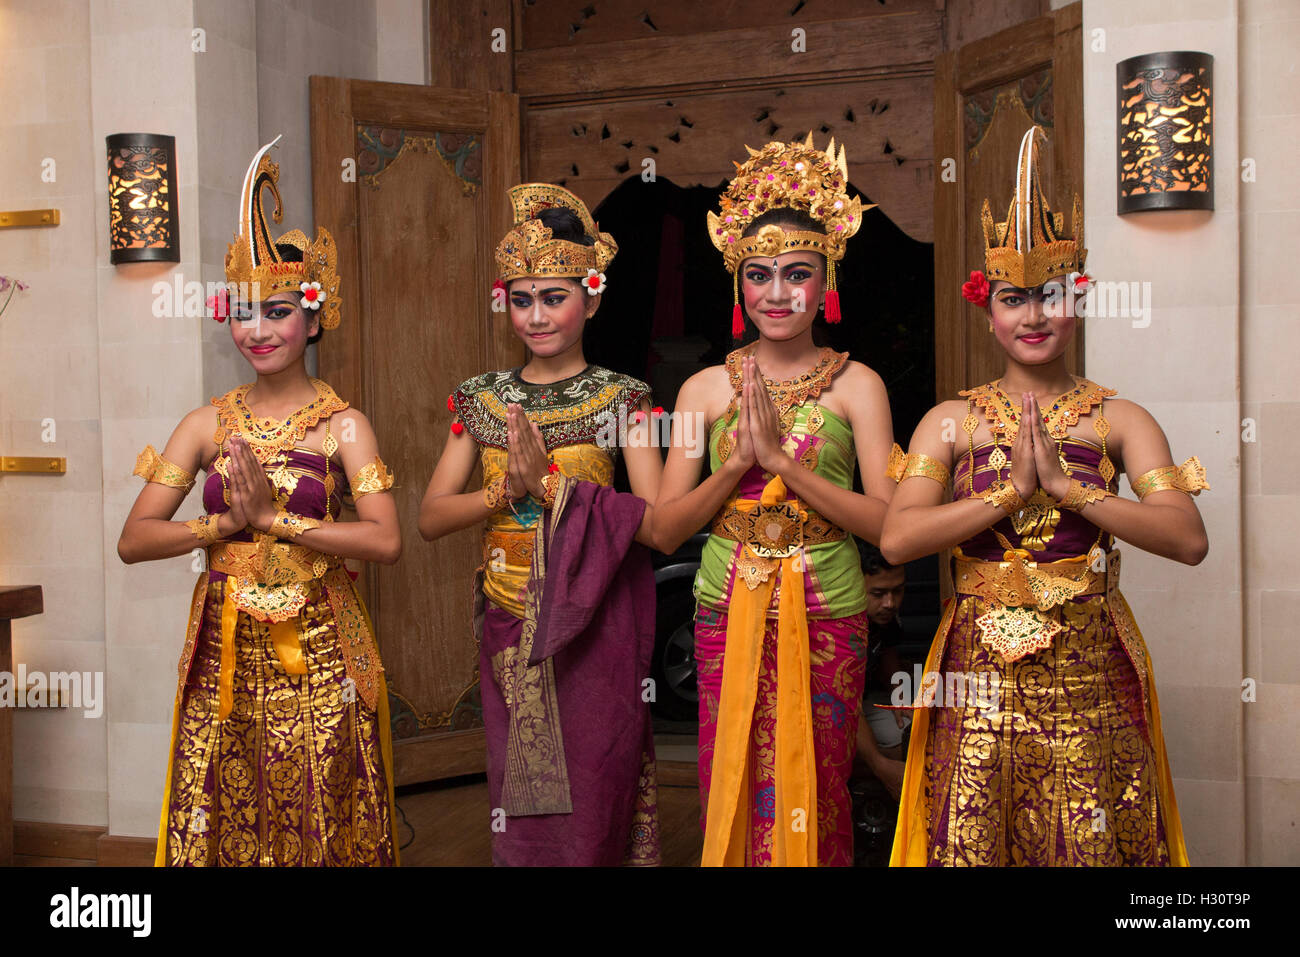 L'INDONÉSIE, Bali, Lombok, groupe de jeunes femmes danseurs balinais avec les mains en position de prière respectueuse Banque D'Images